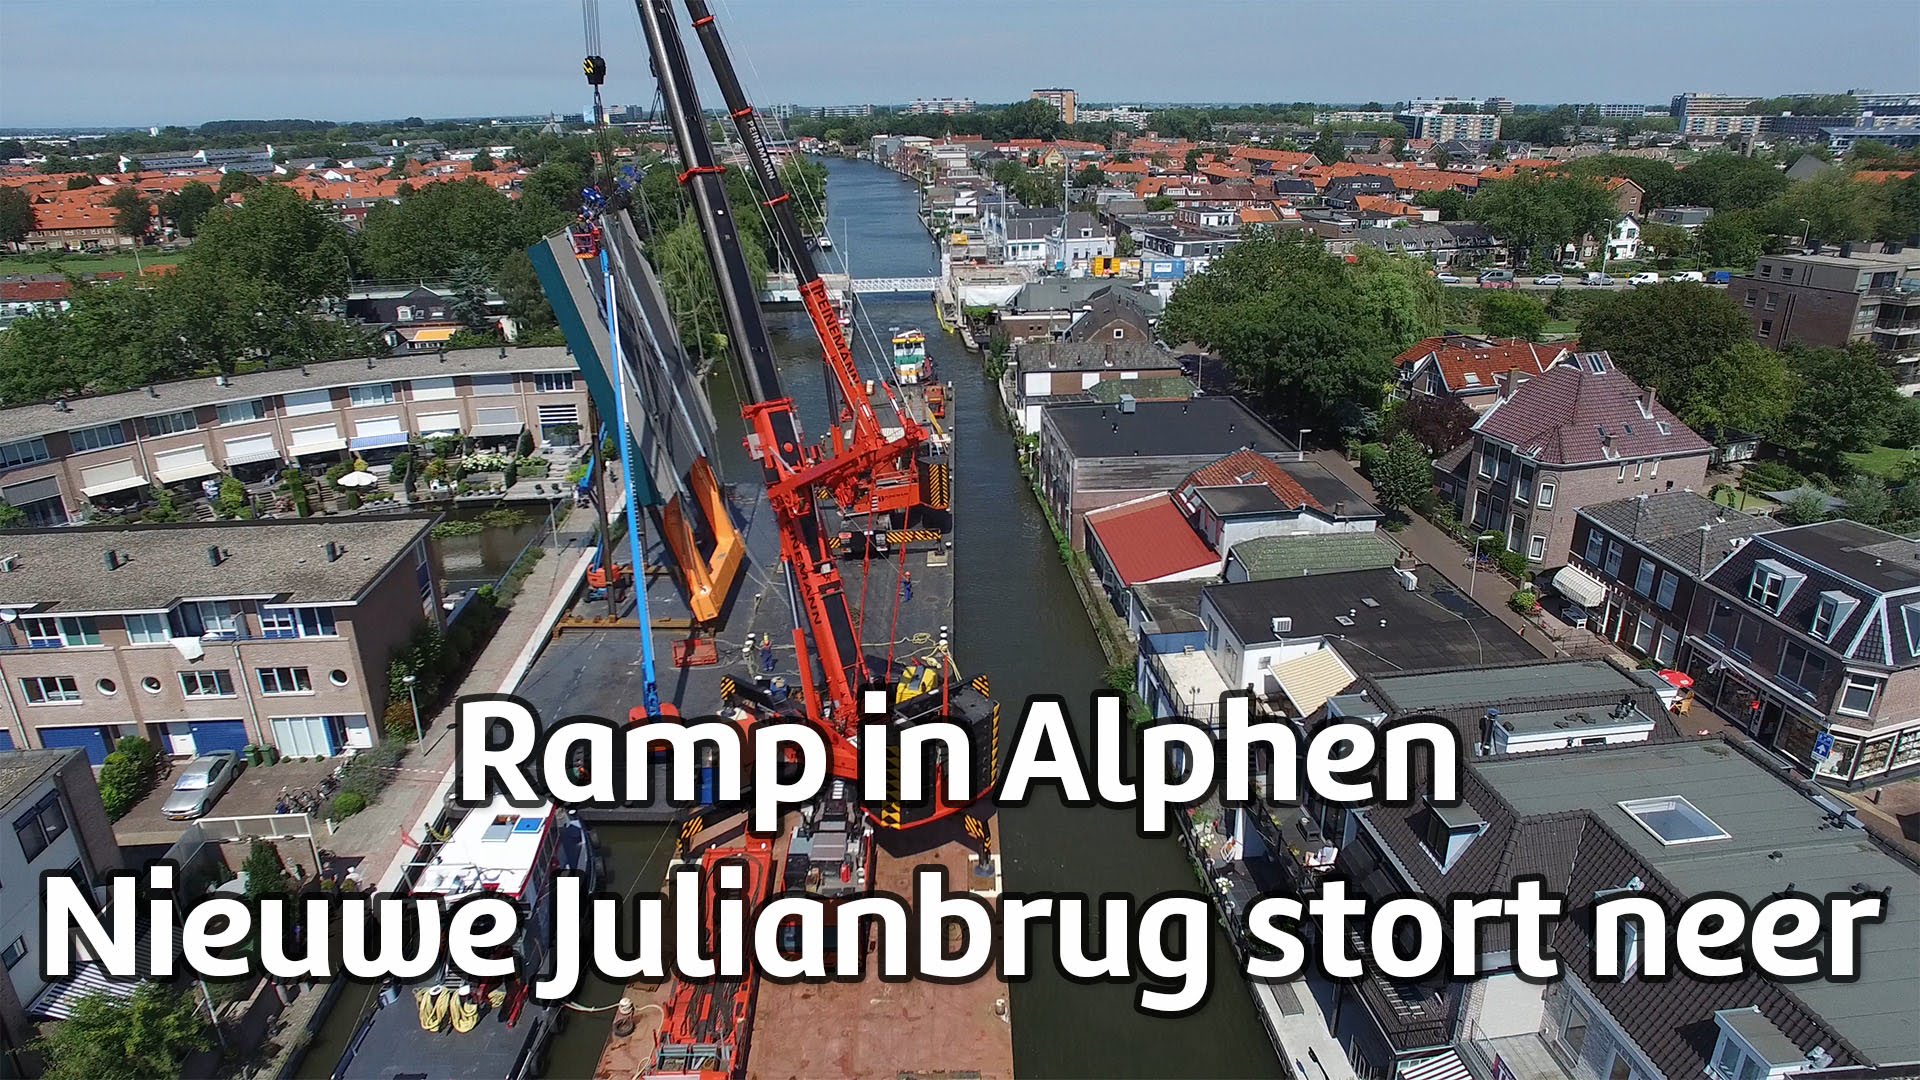 VIDEO: Nīderlandē uz dzīvojamām mājām uzgāžas divi celtņi. Vismaz 20 ievainoto. (Julianabrug stort neer)